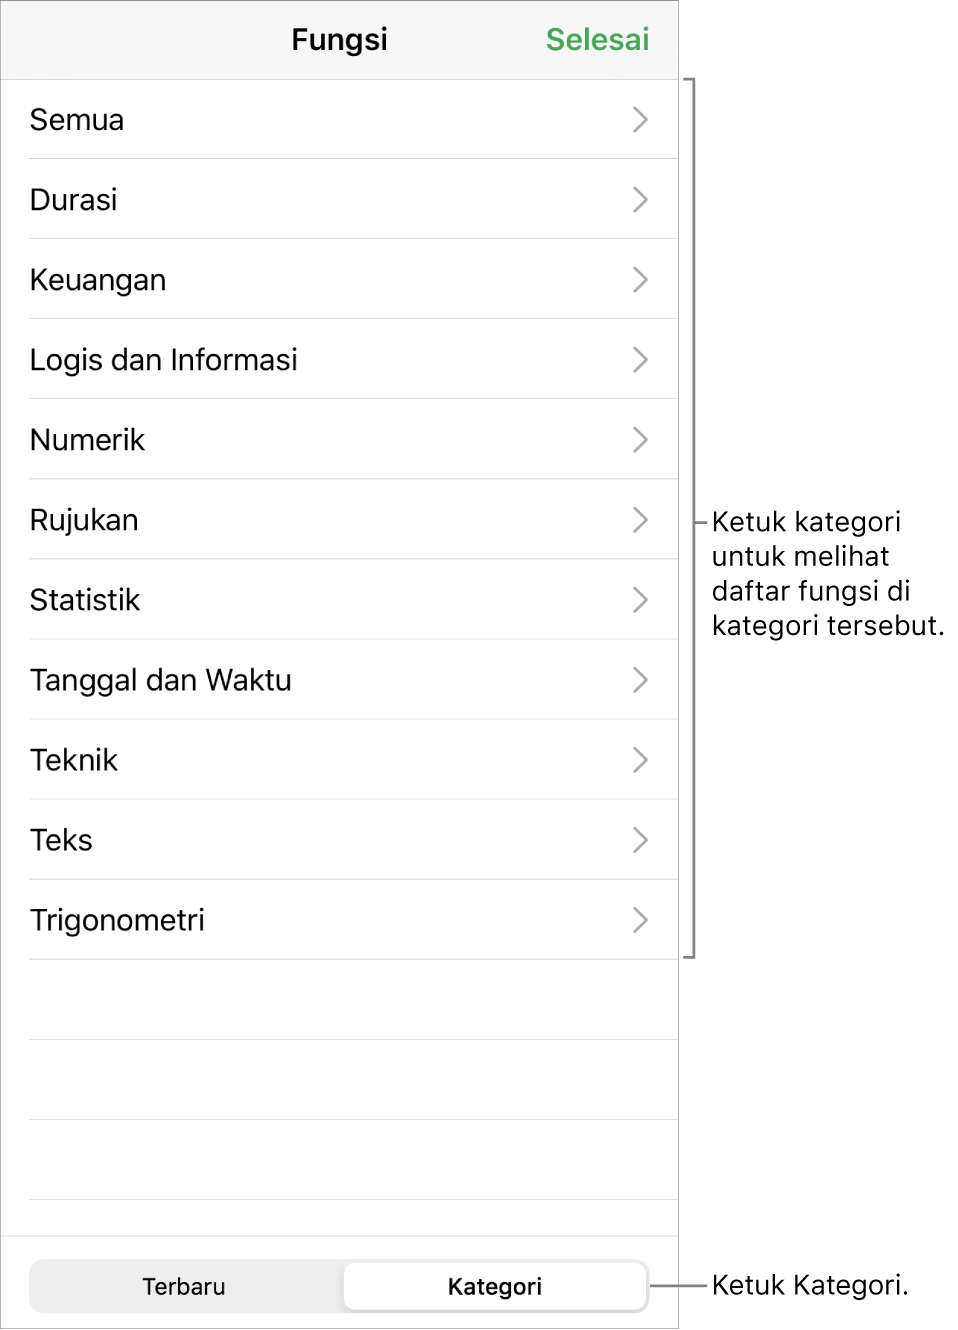 Browser Fungsi dengan keterangan untuk tombol Kategori dan daftar kategori.